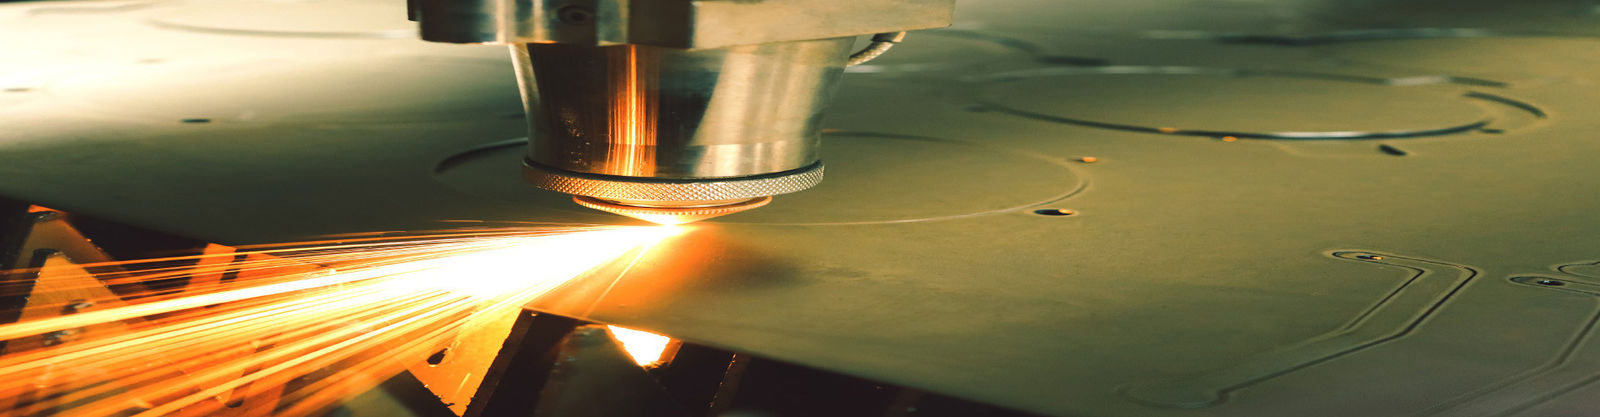 qualité Fabrication de tôle d'acier inoxydable usine